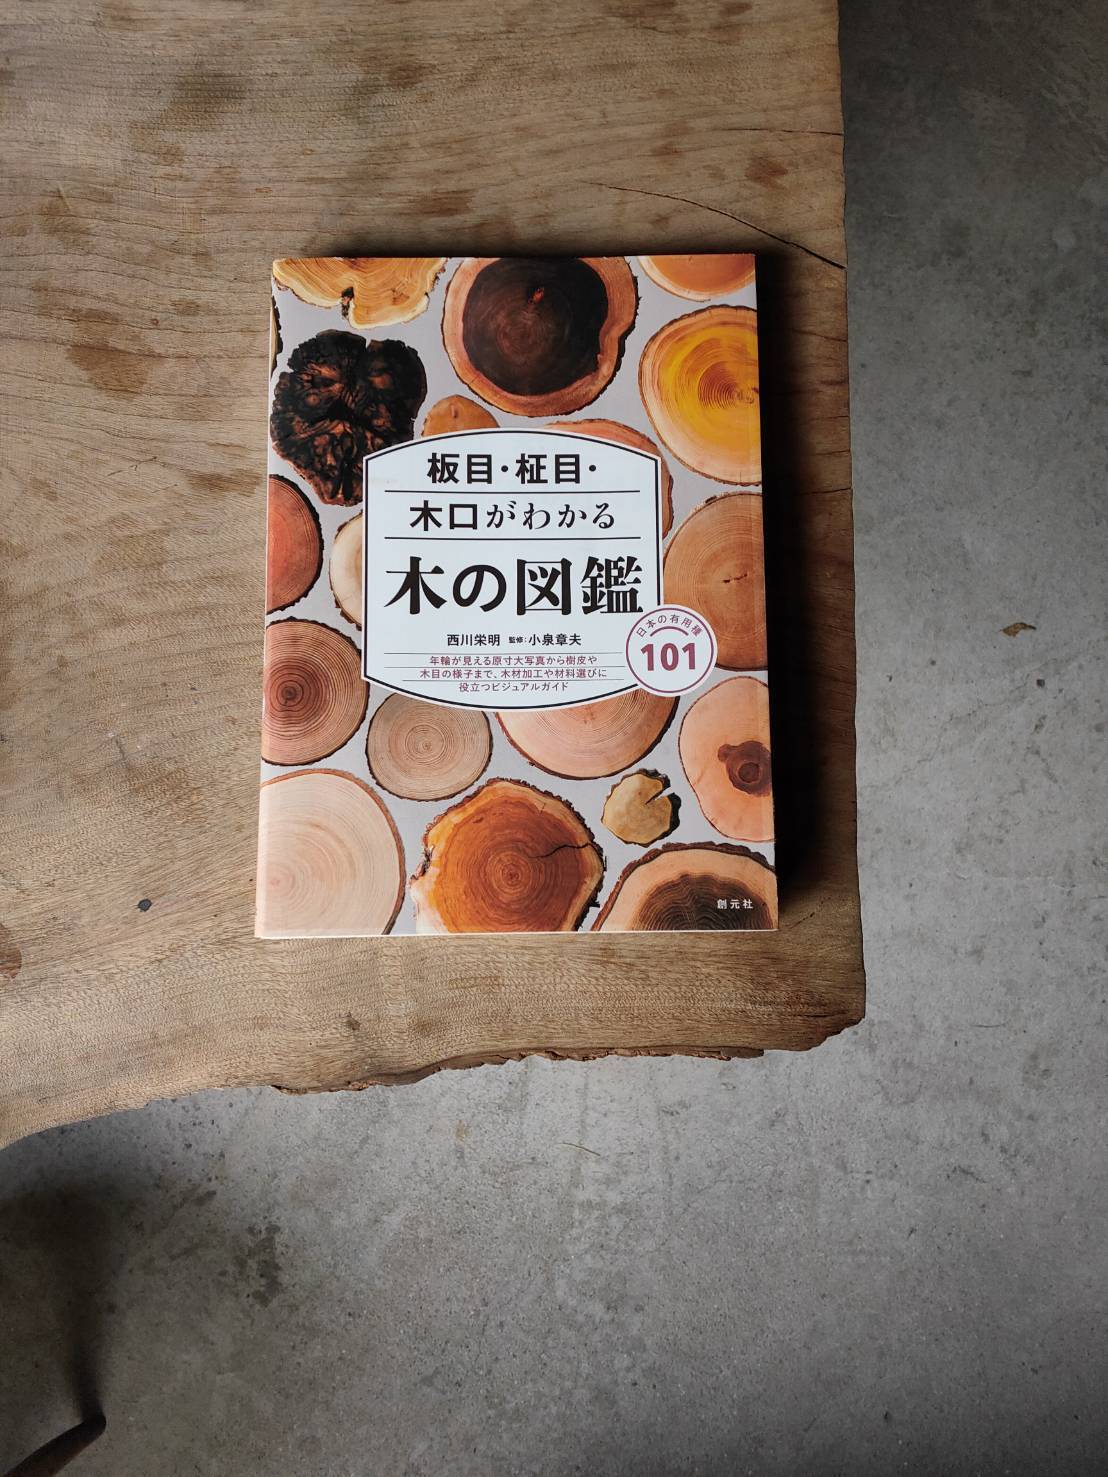 本『板目・柾目・小口がわかる 木の図鑑ー日本の有用種101』西川